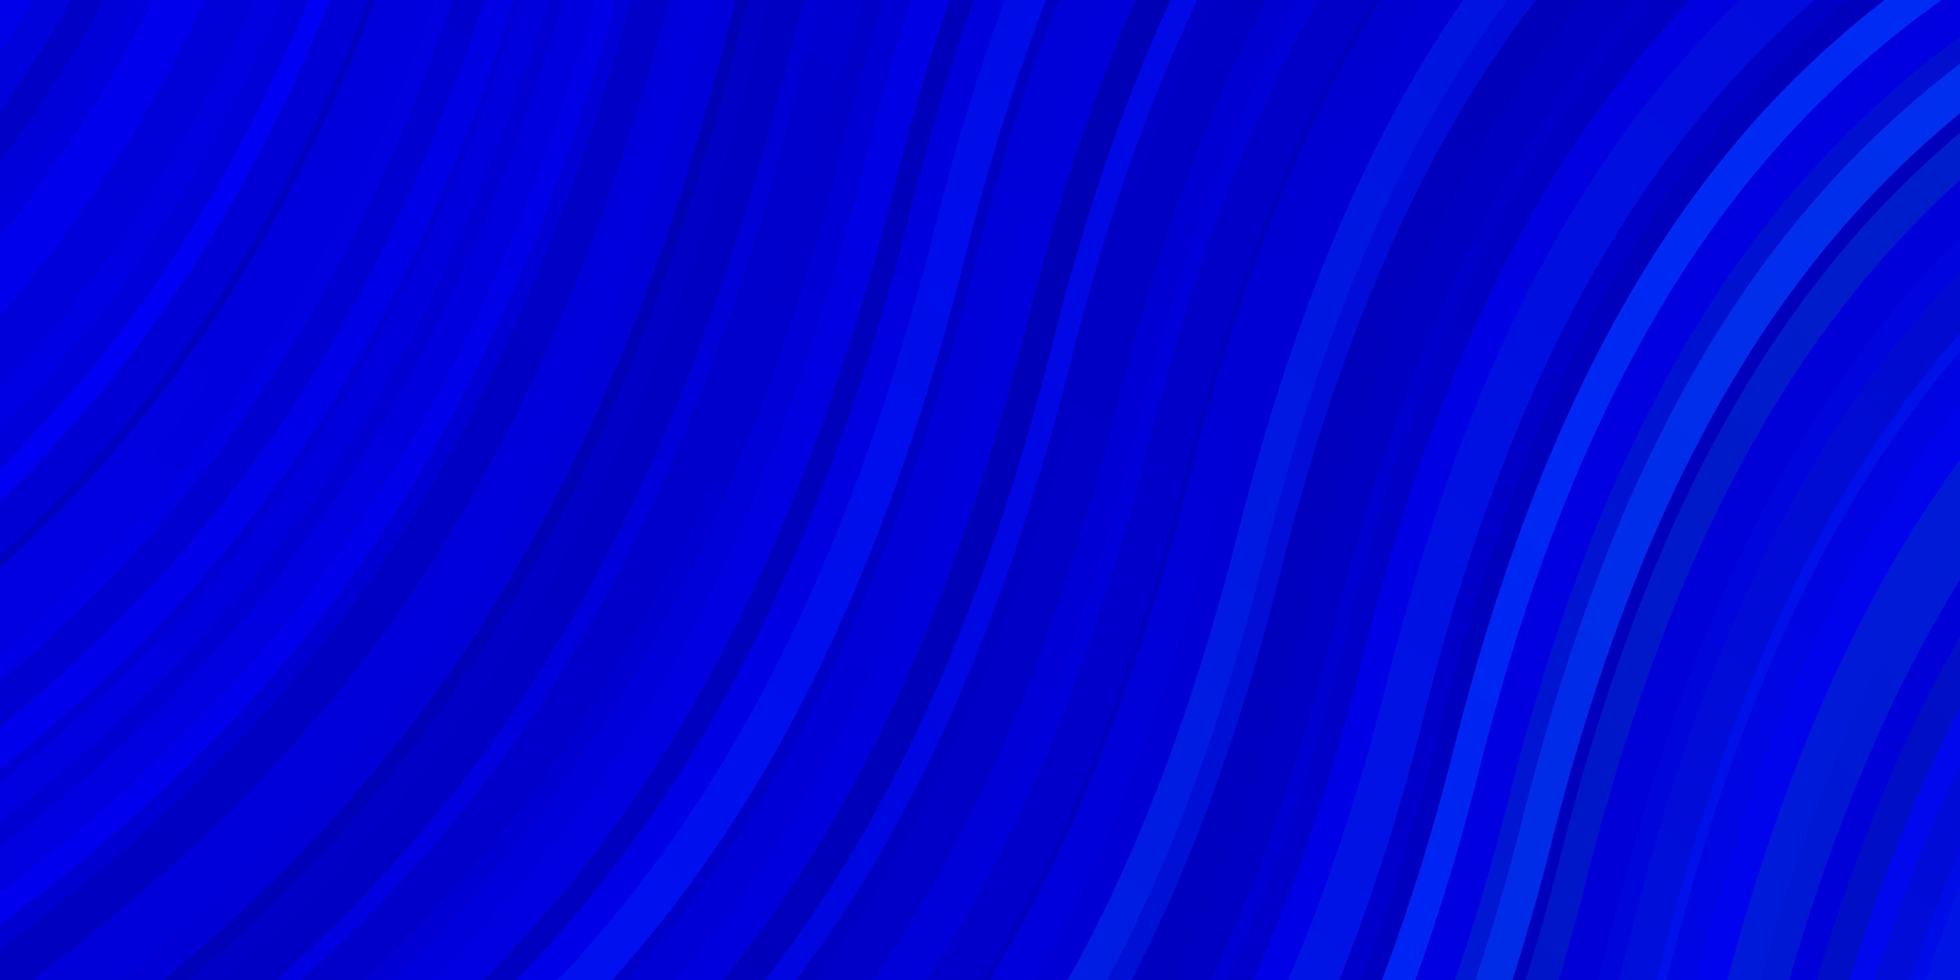 Fondo de vector azul claro con líneas torcidas.